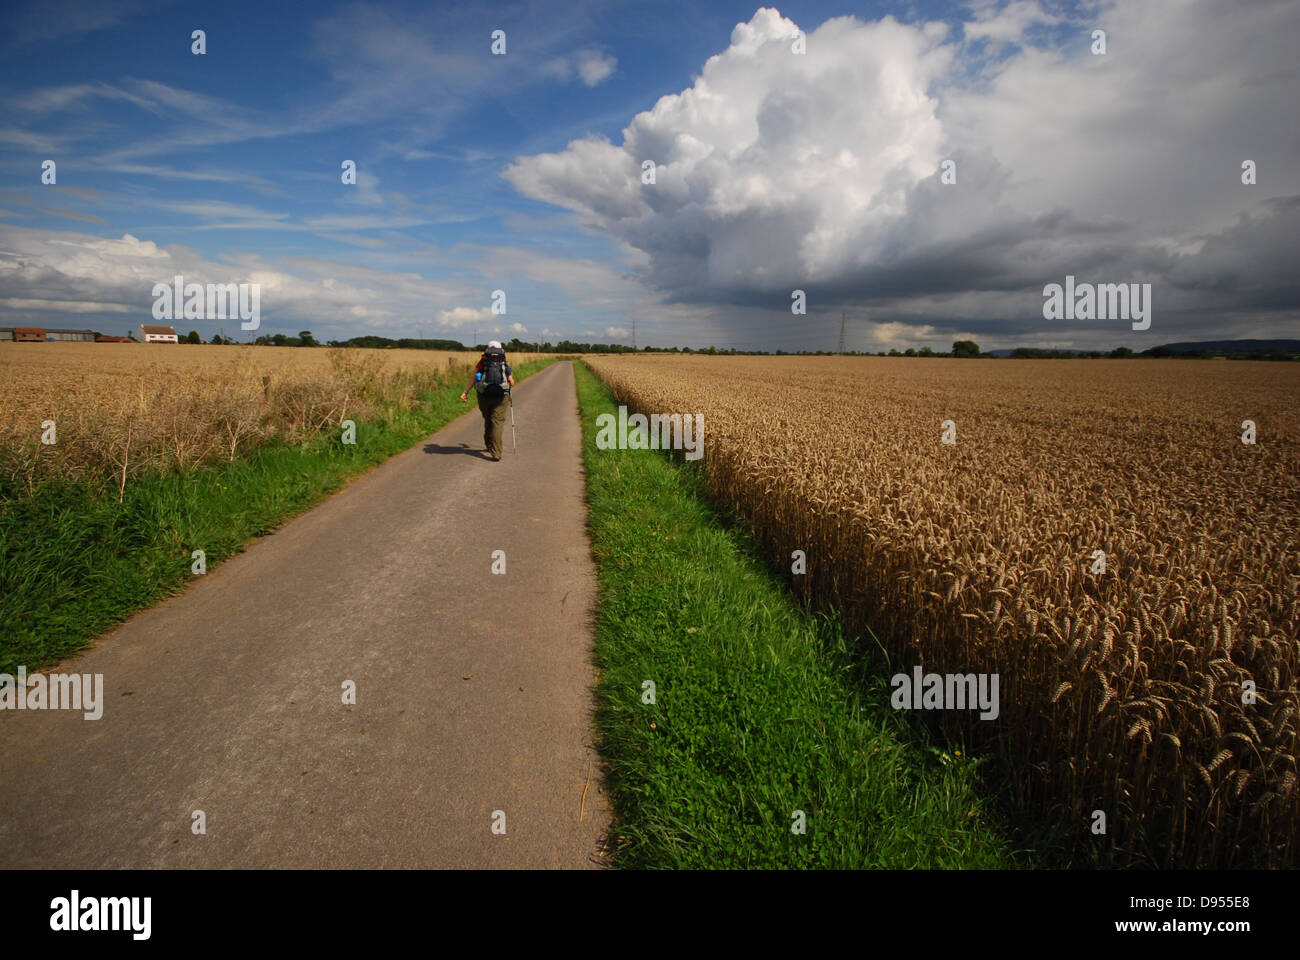 Ruhige ländliche Landschaft mit einer Person, die durch Getreidepflanzen und grasbedeckte Felder geht. Stockfoto